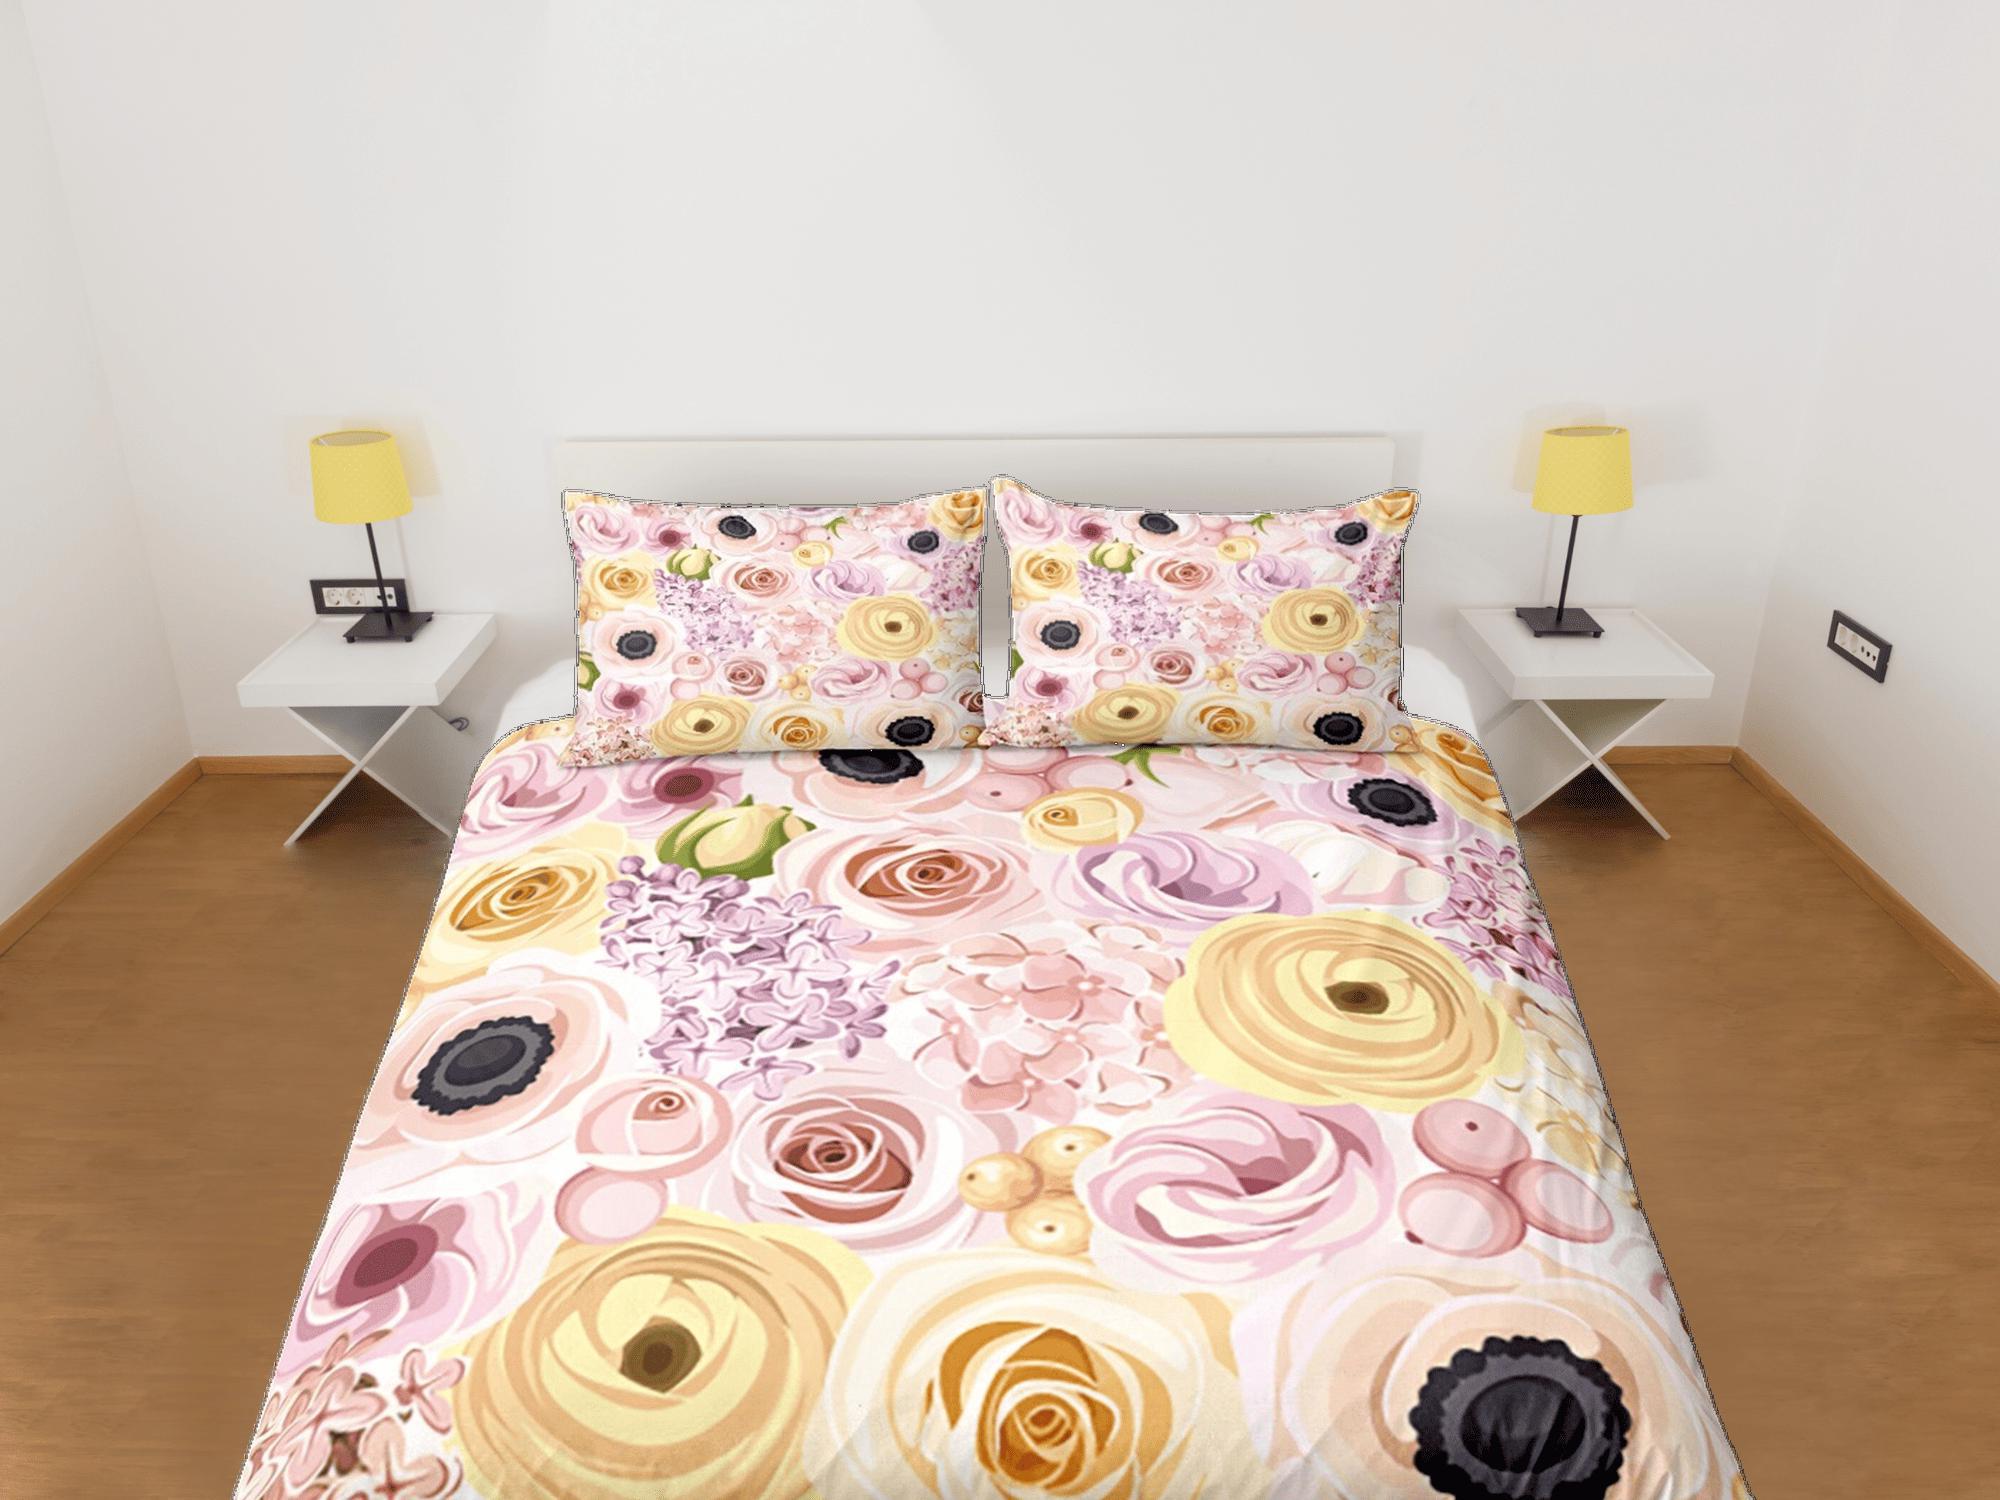 daintyduvet Pink Roses Beige Duvet Cover Set Colorful Bedspread, Floral Dorm Bedding Pillowcase